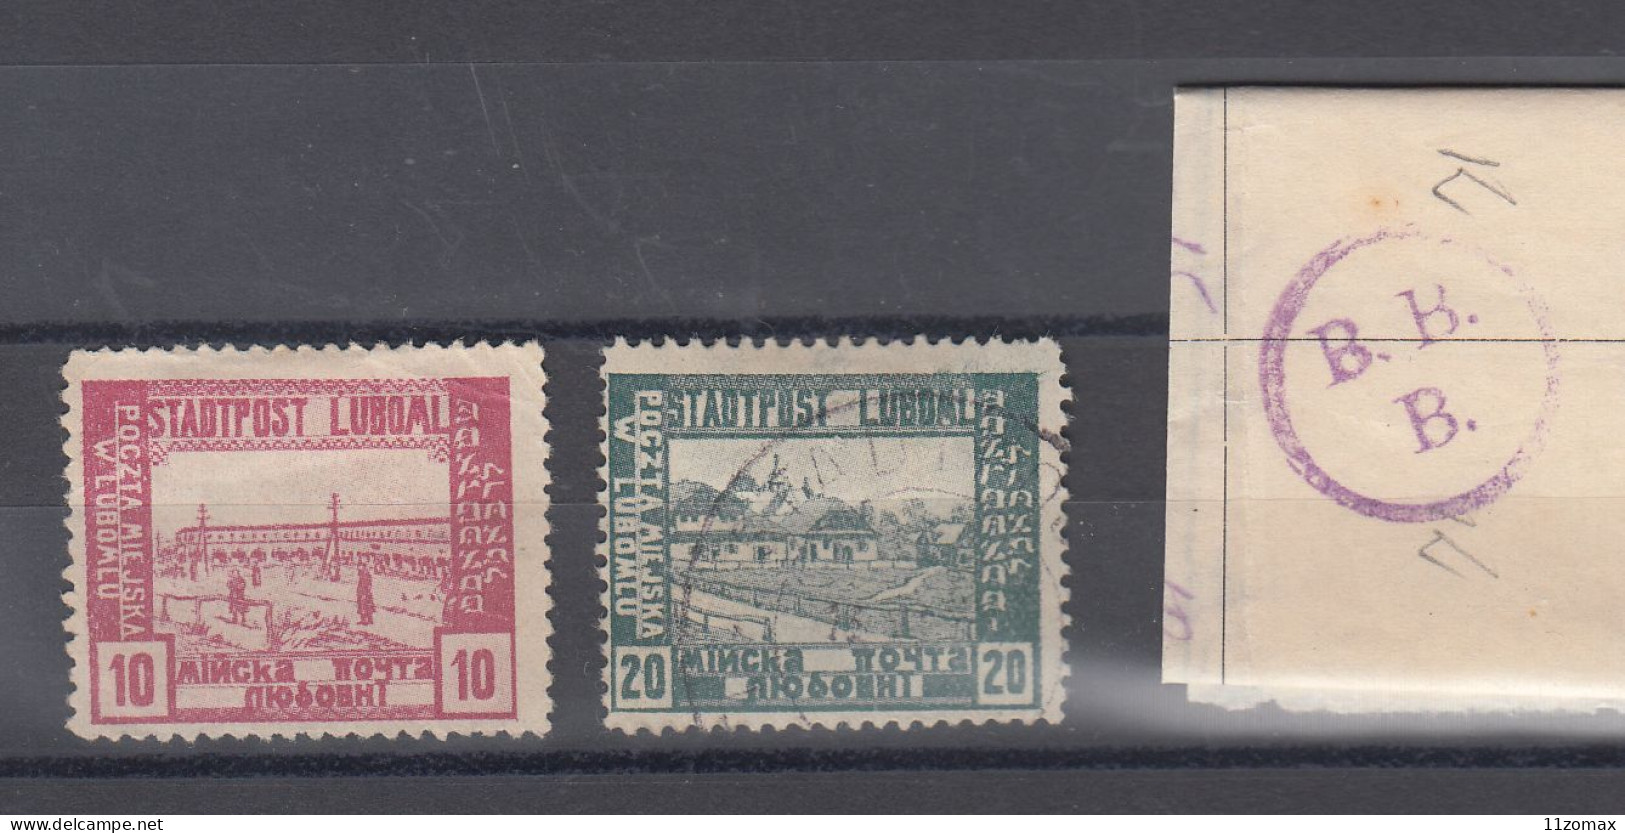 LUBOML LYUBOML Ukraina Now 1918. Lot Of 2 Stamps - VIPauction001 - Nuovi